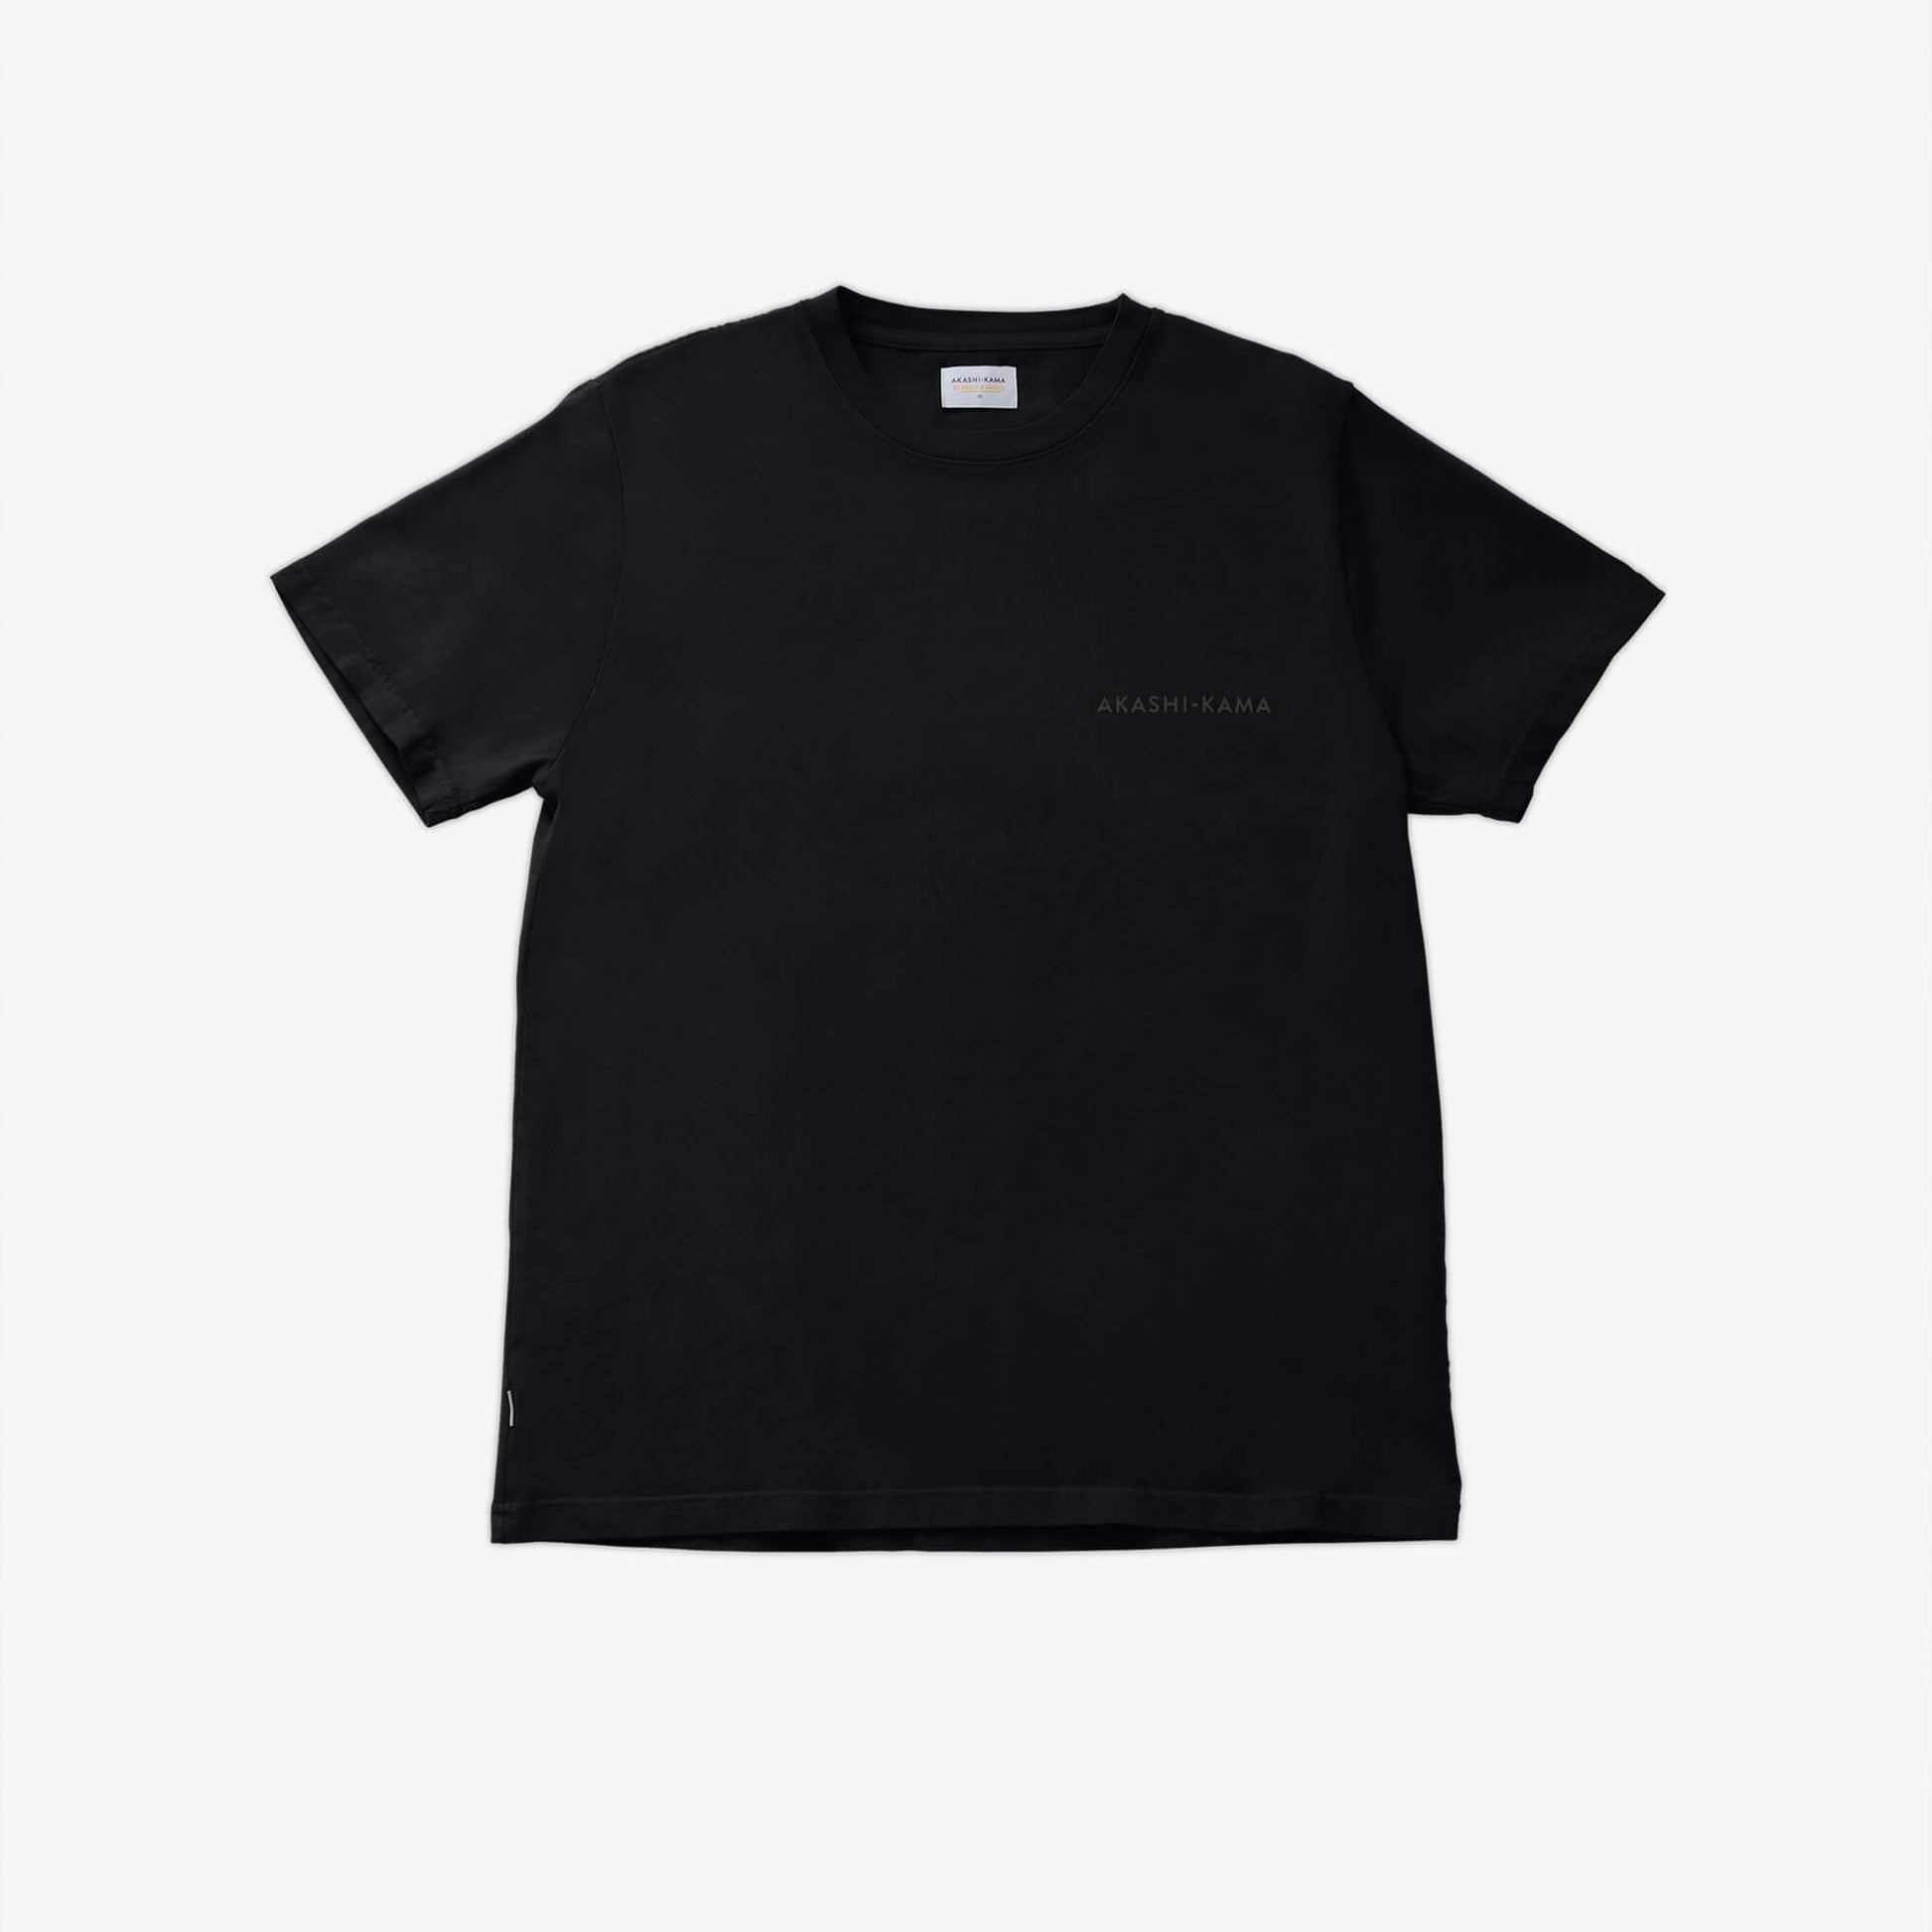 Stamped Logo AKASHI-KAMA Tee in Black | Streetwear Garment Dye Shirt Made in USA